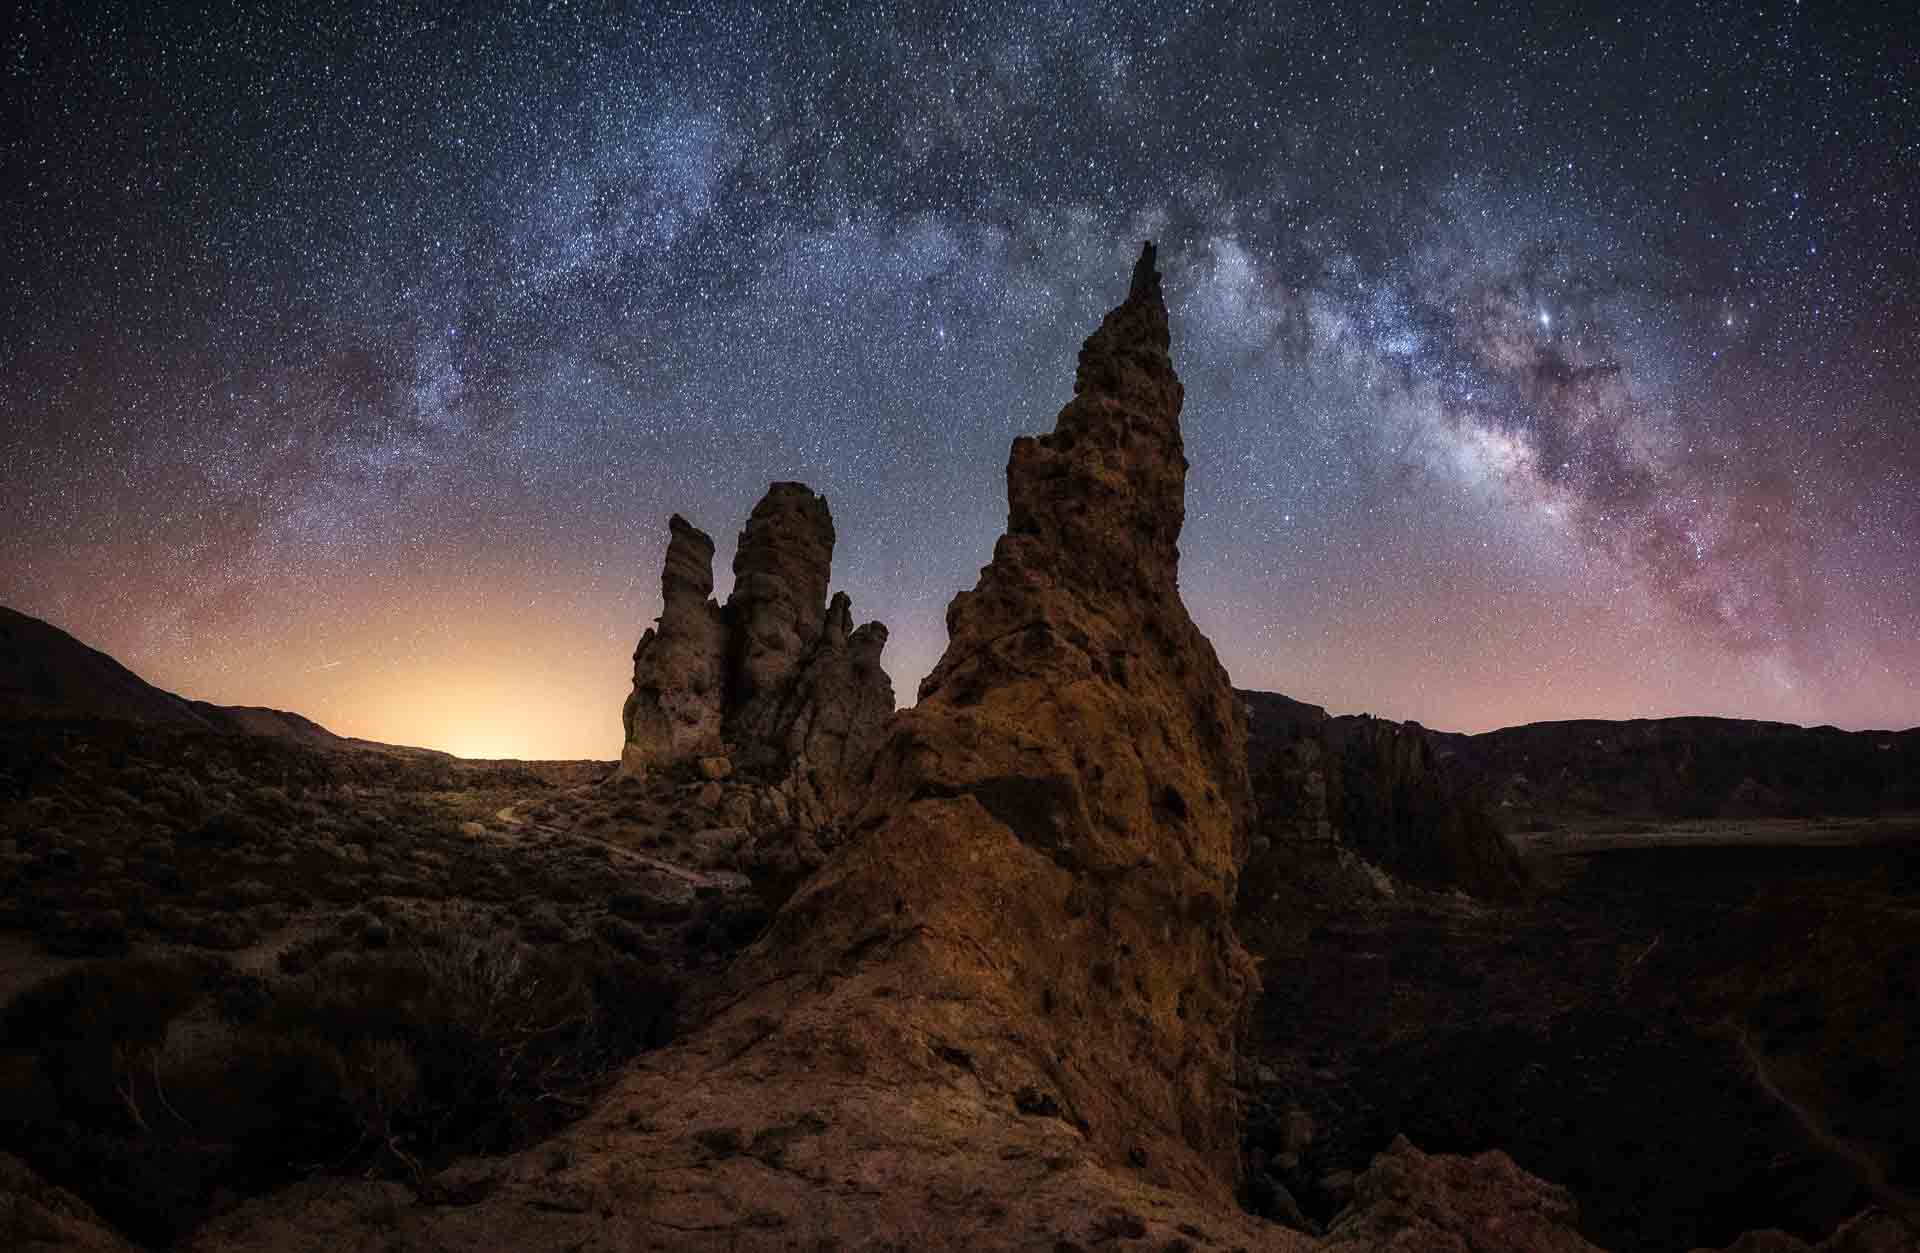 Excursiones desde Puerto de la Cruz al Teide para observar estrellas